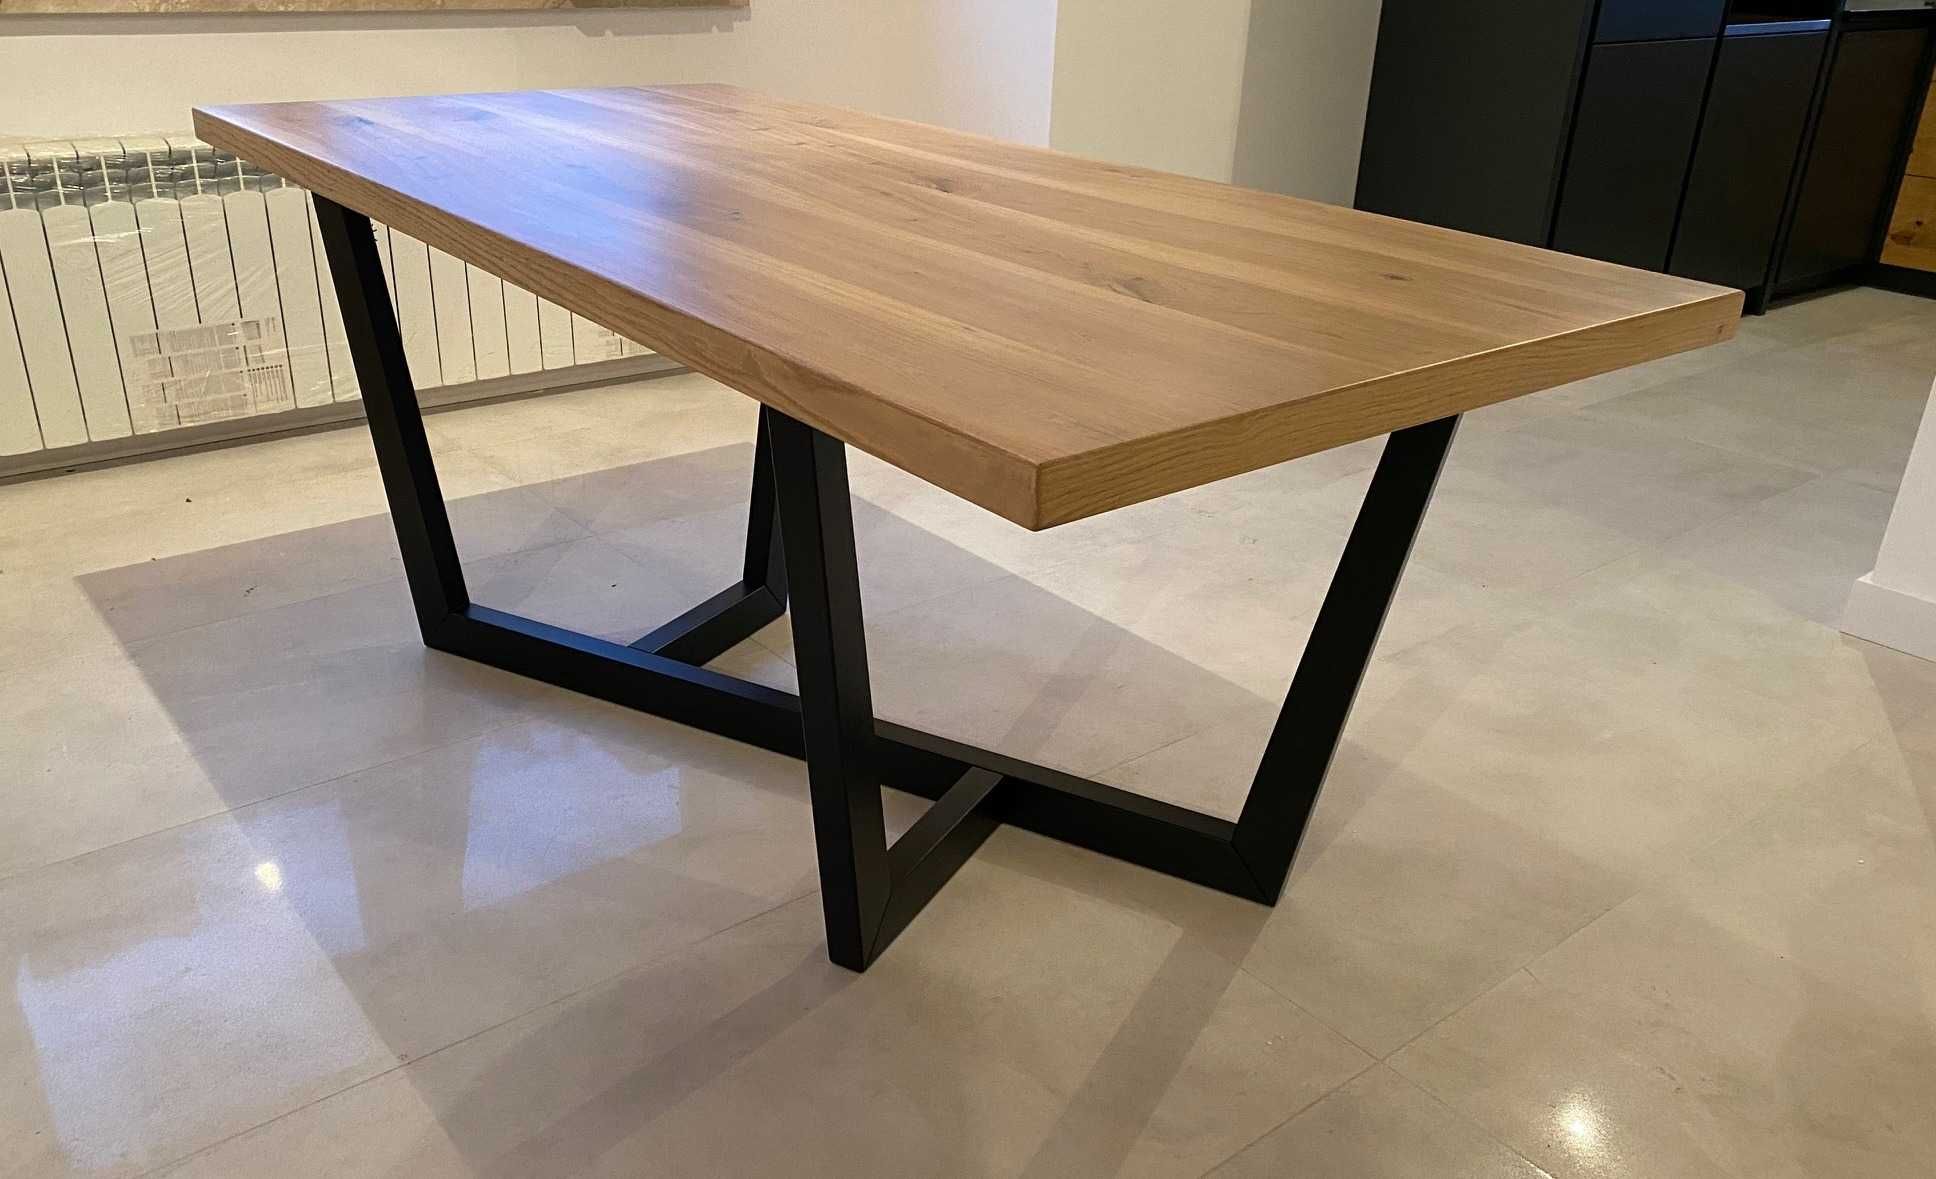 Duży stół z litego drewna dębowego 190x90 do jadalni, salonu